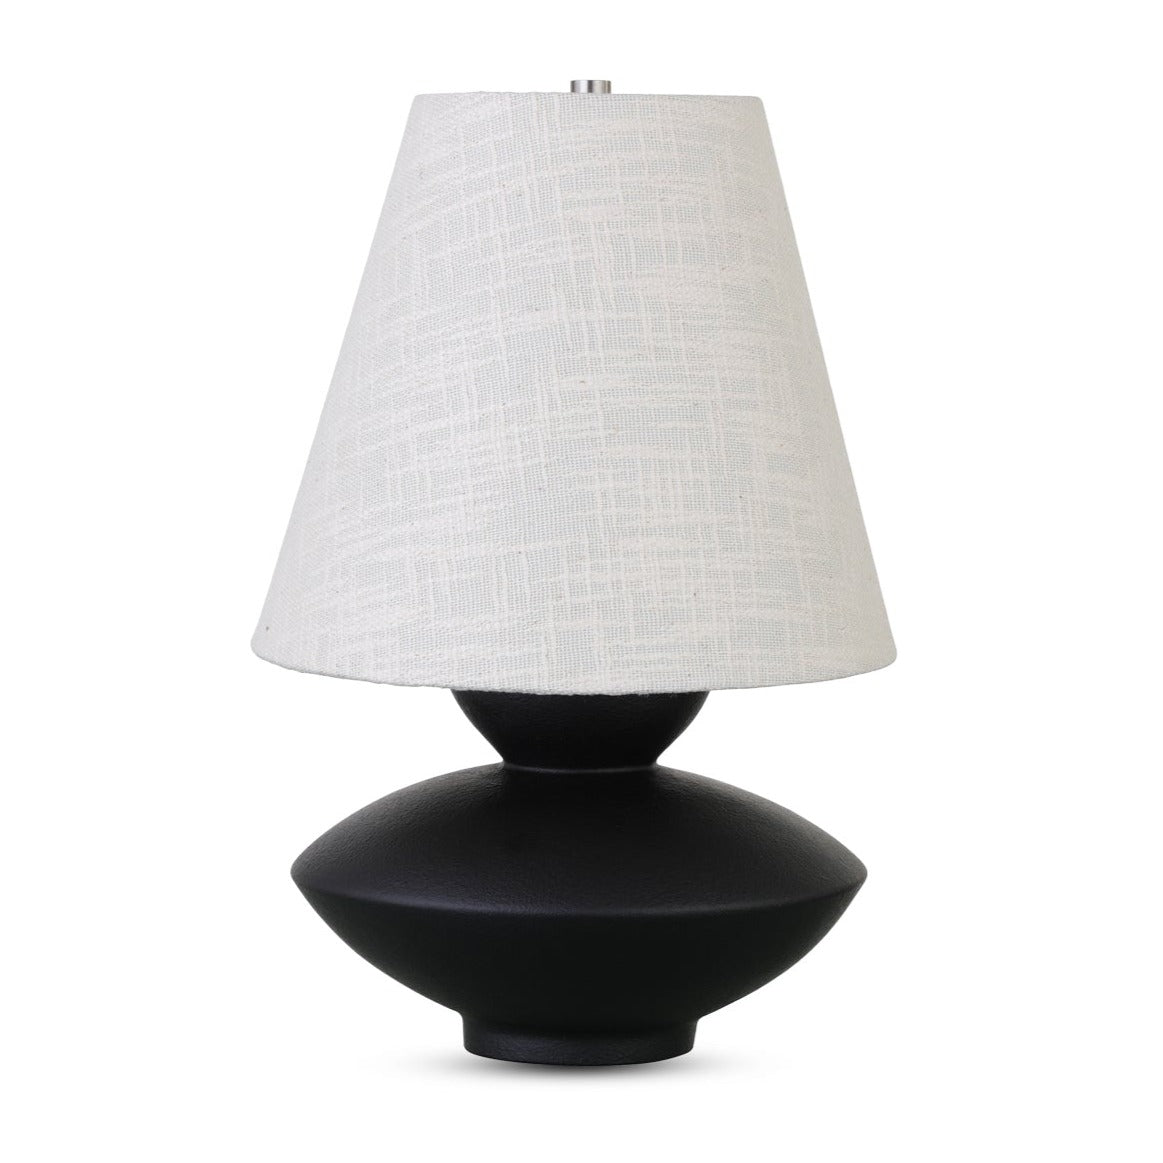 Gardena Table Lamp